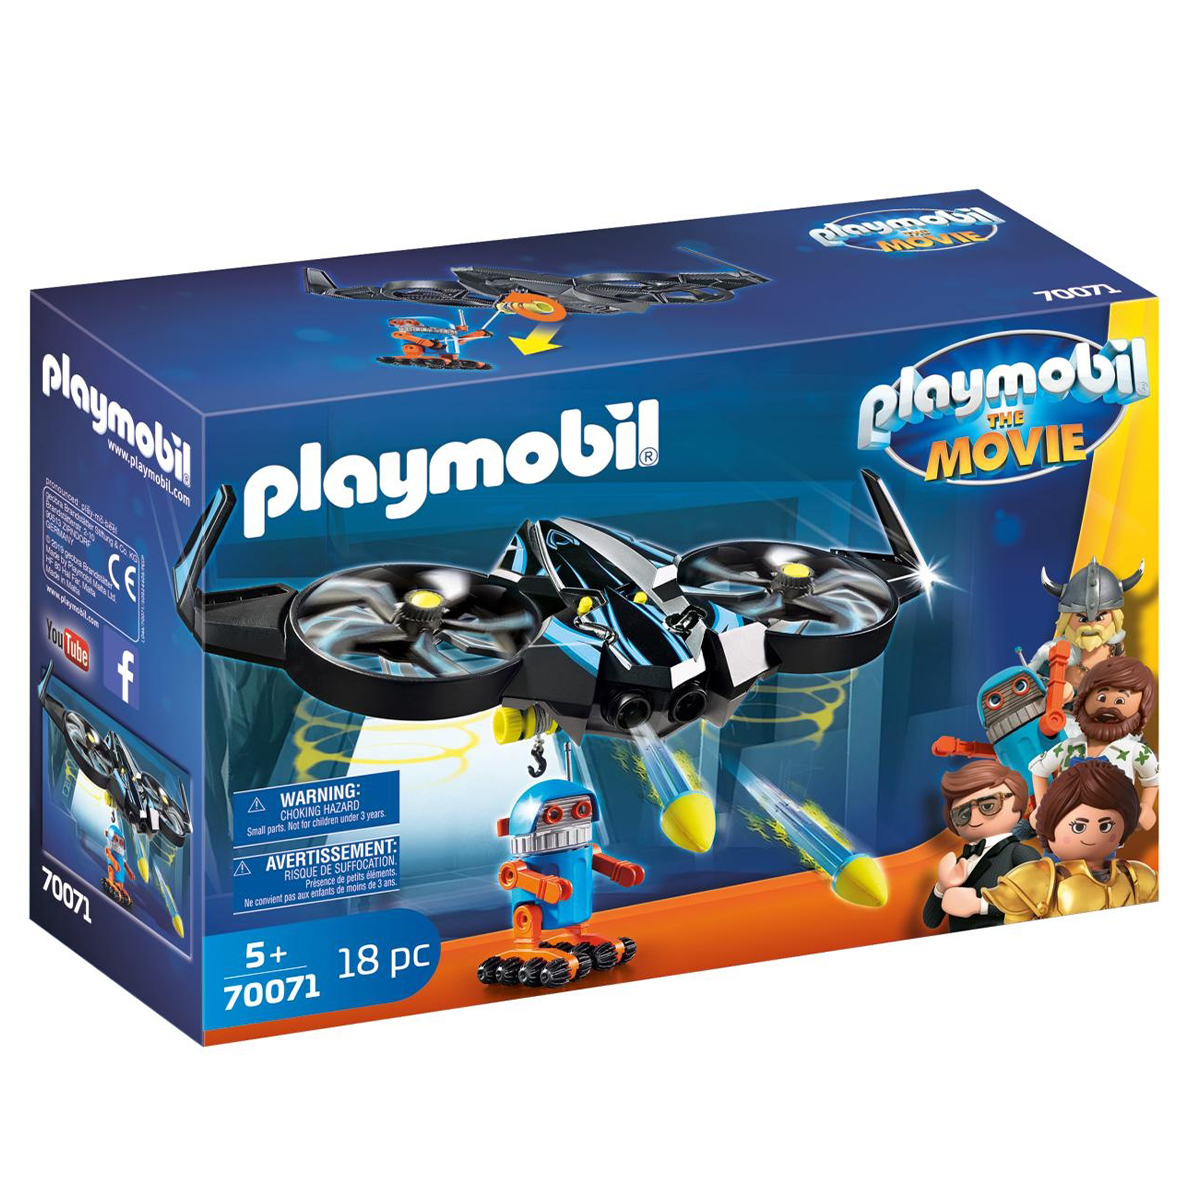 Playmobil The Movie, Robotitron Cu Drona 70071